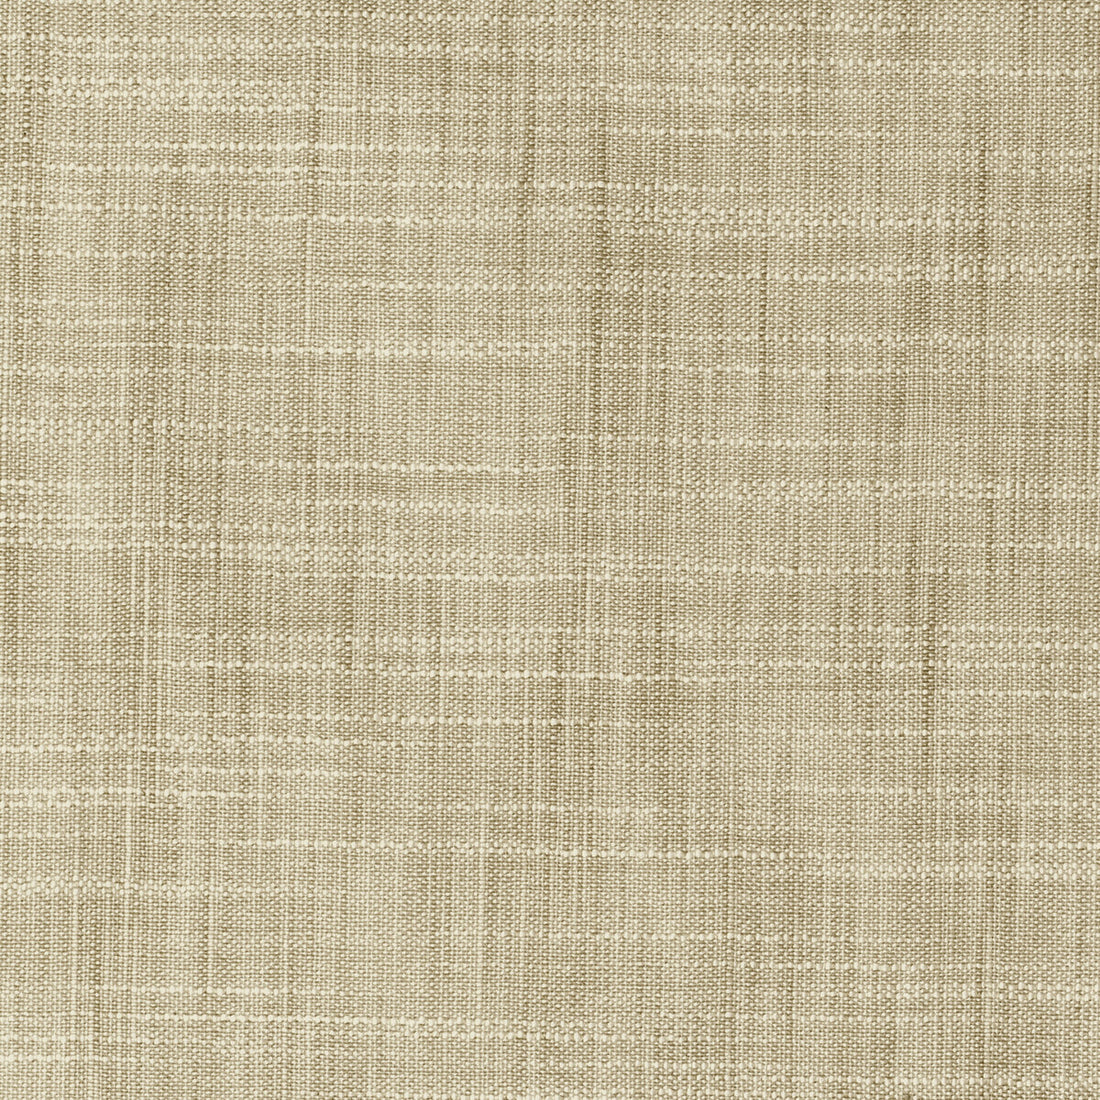 Kravet Basics fabric in 8813-1011 color - pattern 8813.1011.0 - by Kravet Basics